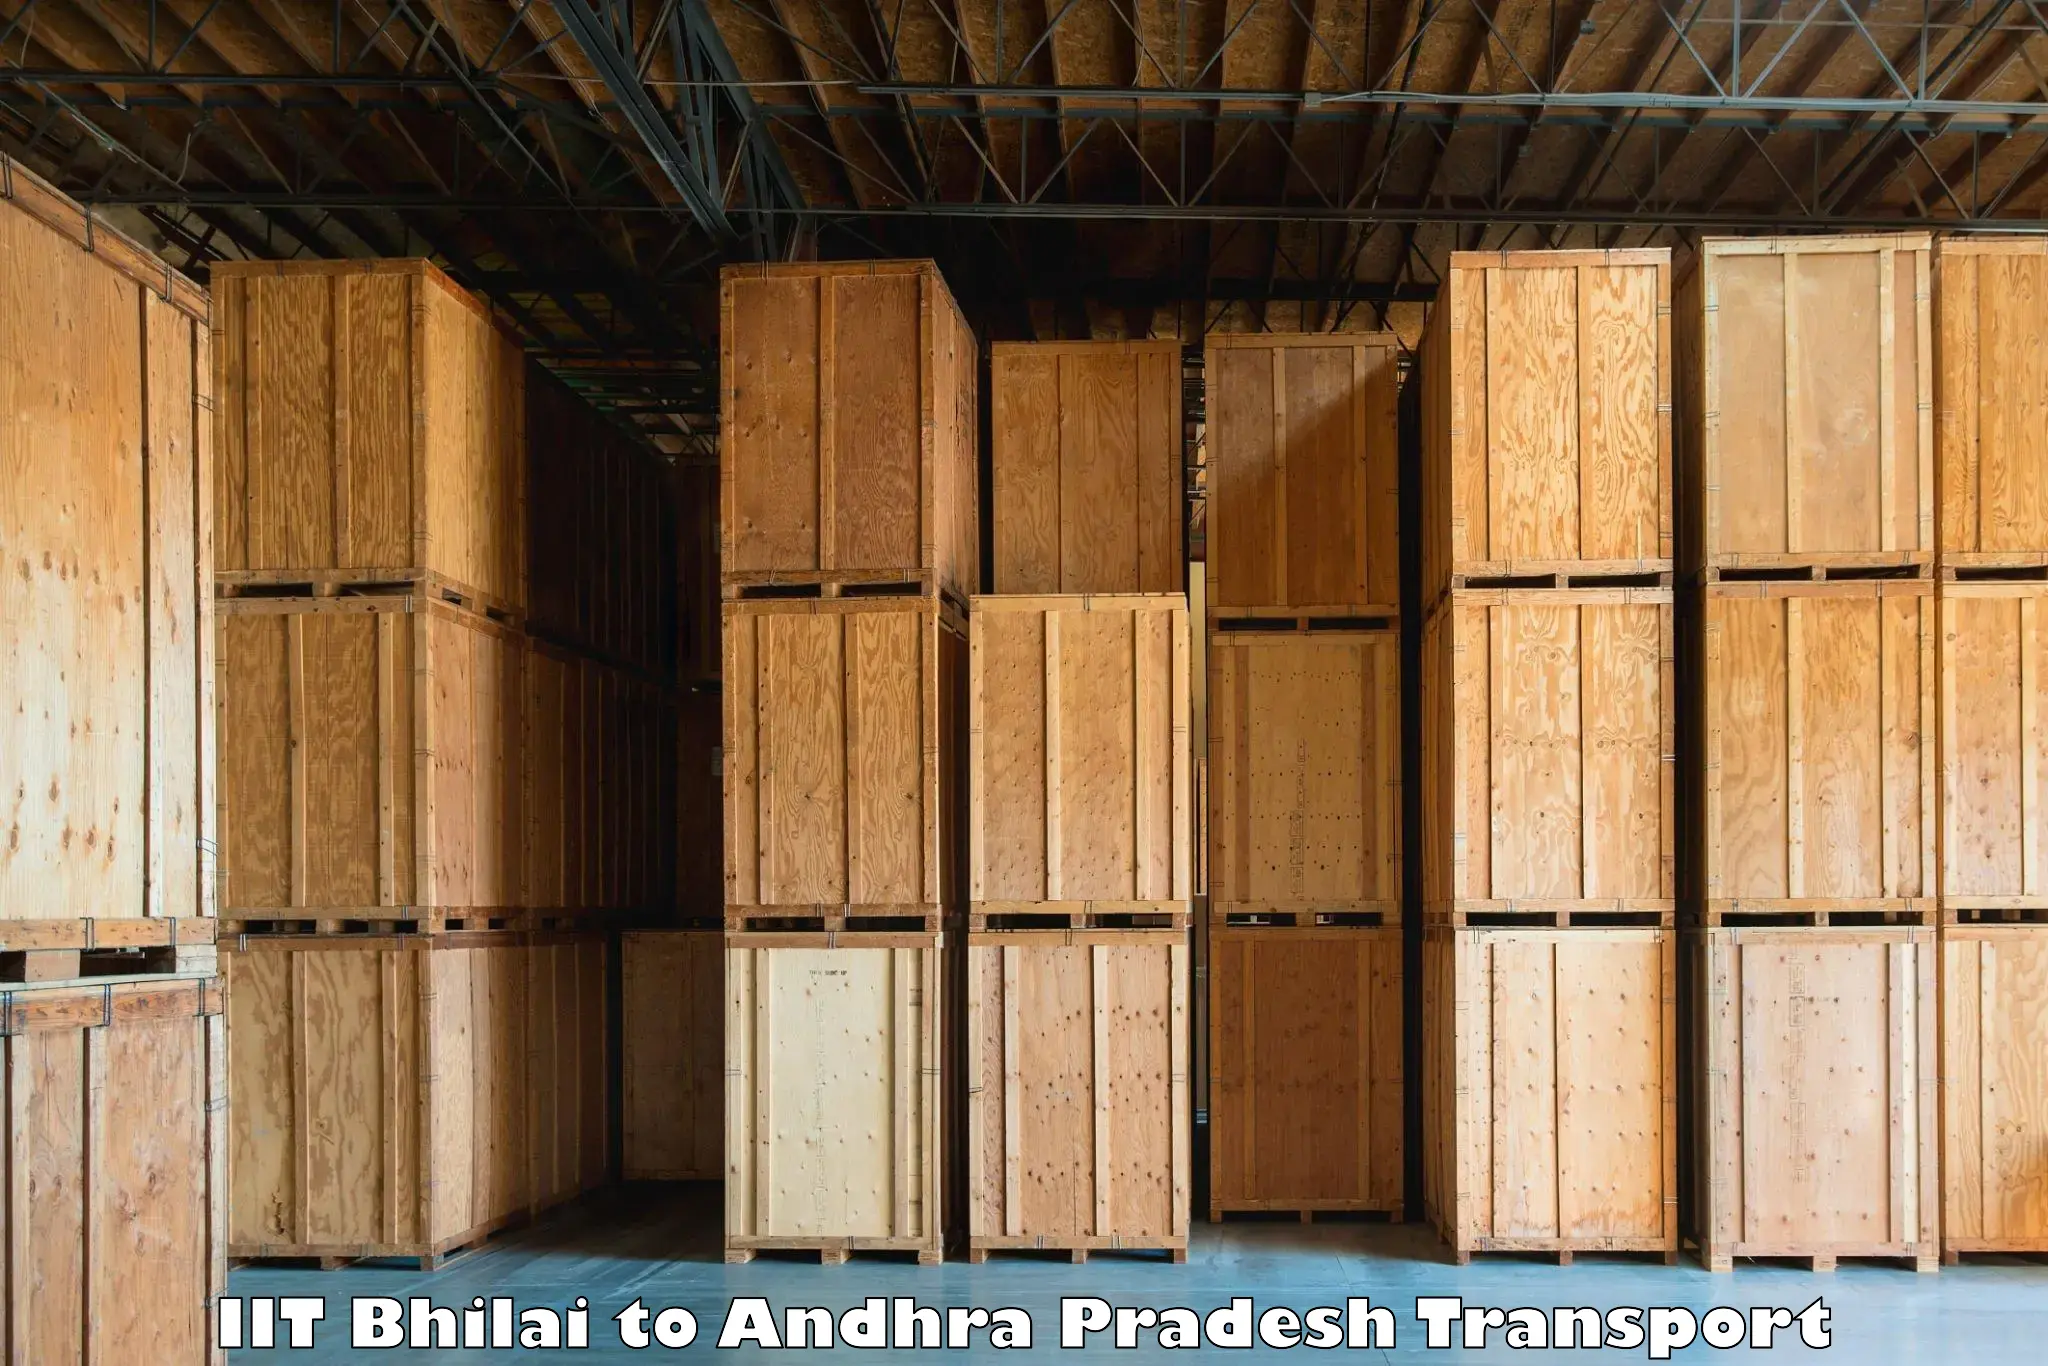 Commercial transport service IIT Bhilai to East Godavari